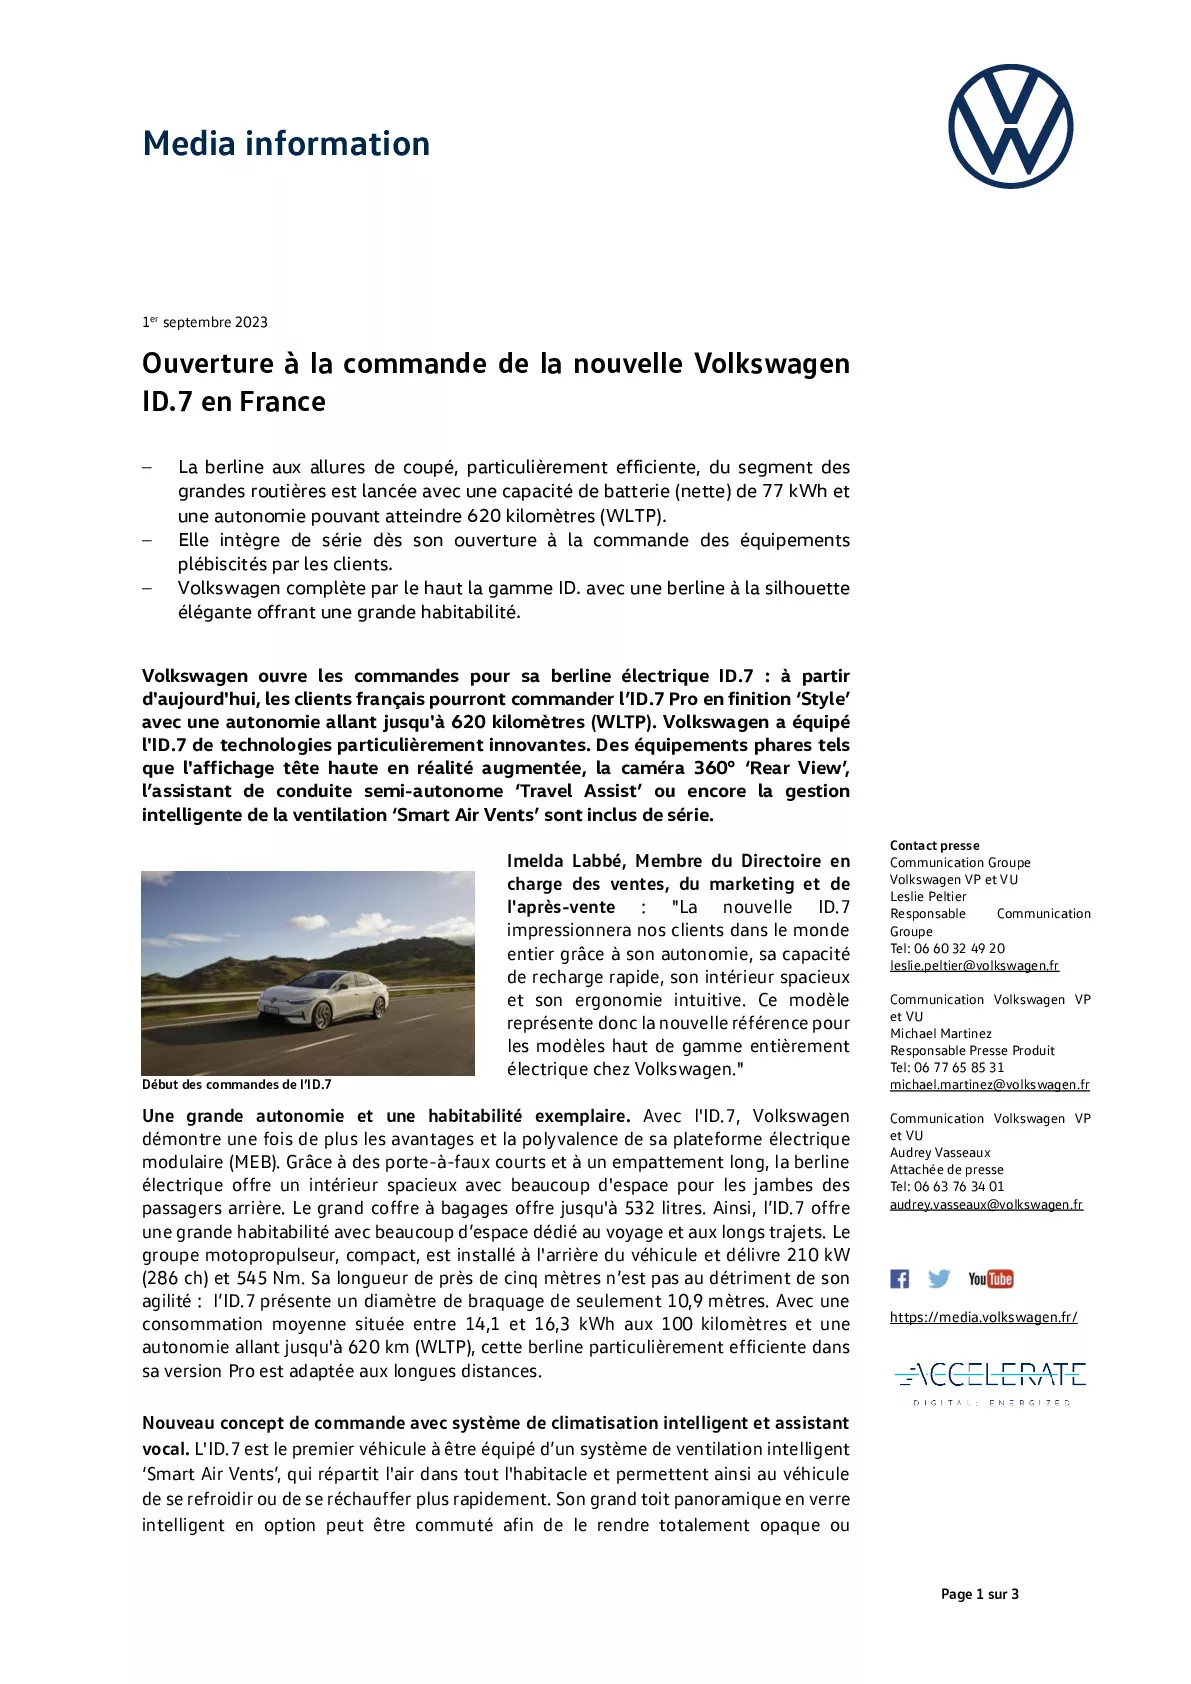 Ouverture à la commande de la nouvelle Volkswagen ID.7 en France-pdf